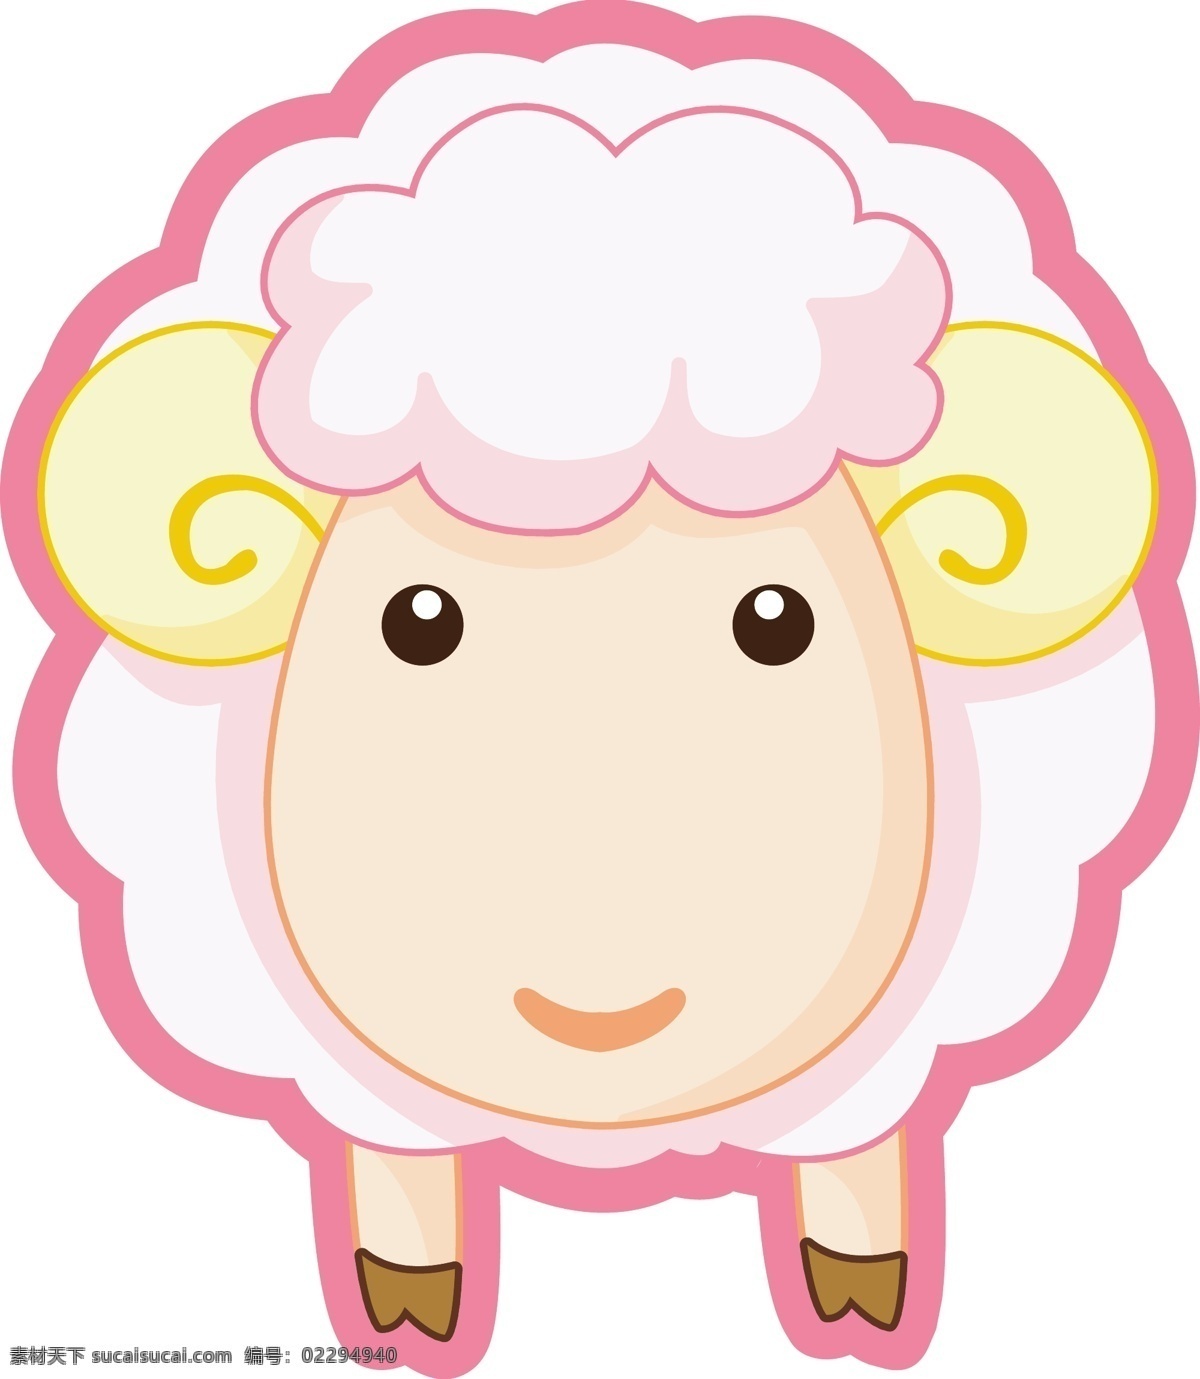 绵羊 可爱 粉色 卡通 生物世界 家禽家畜 矢量图库